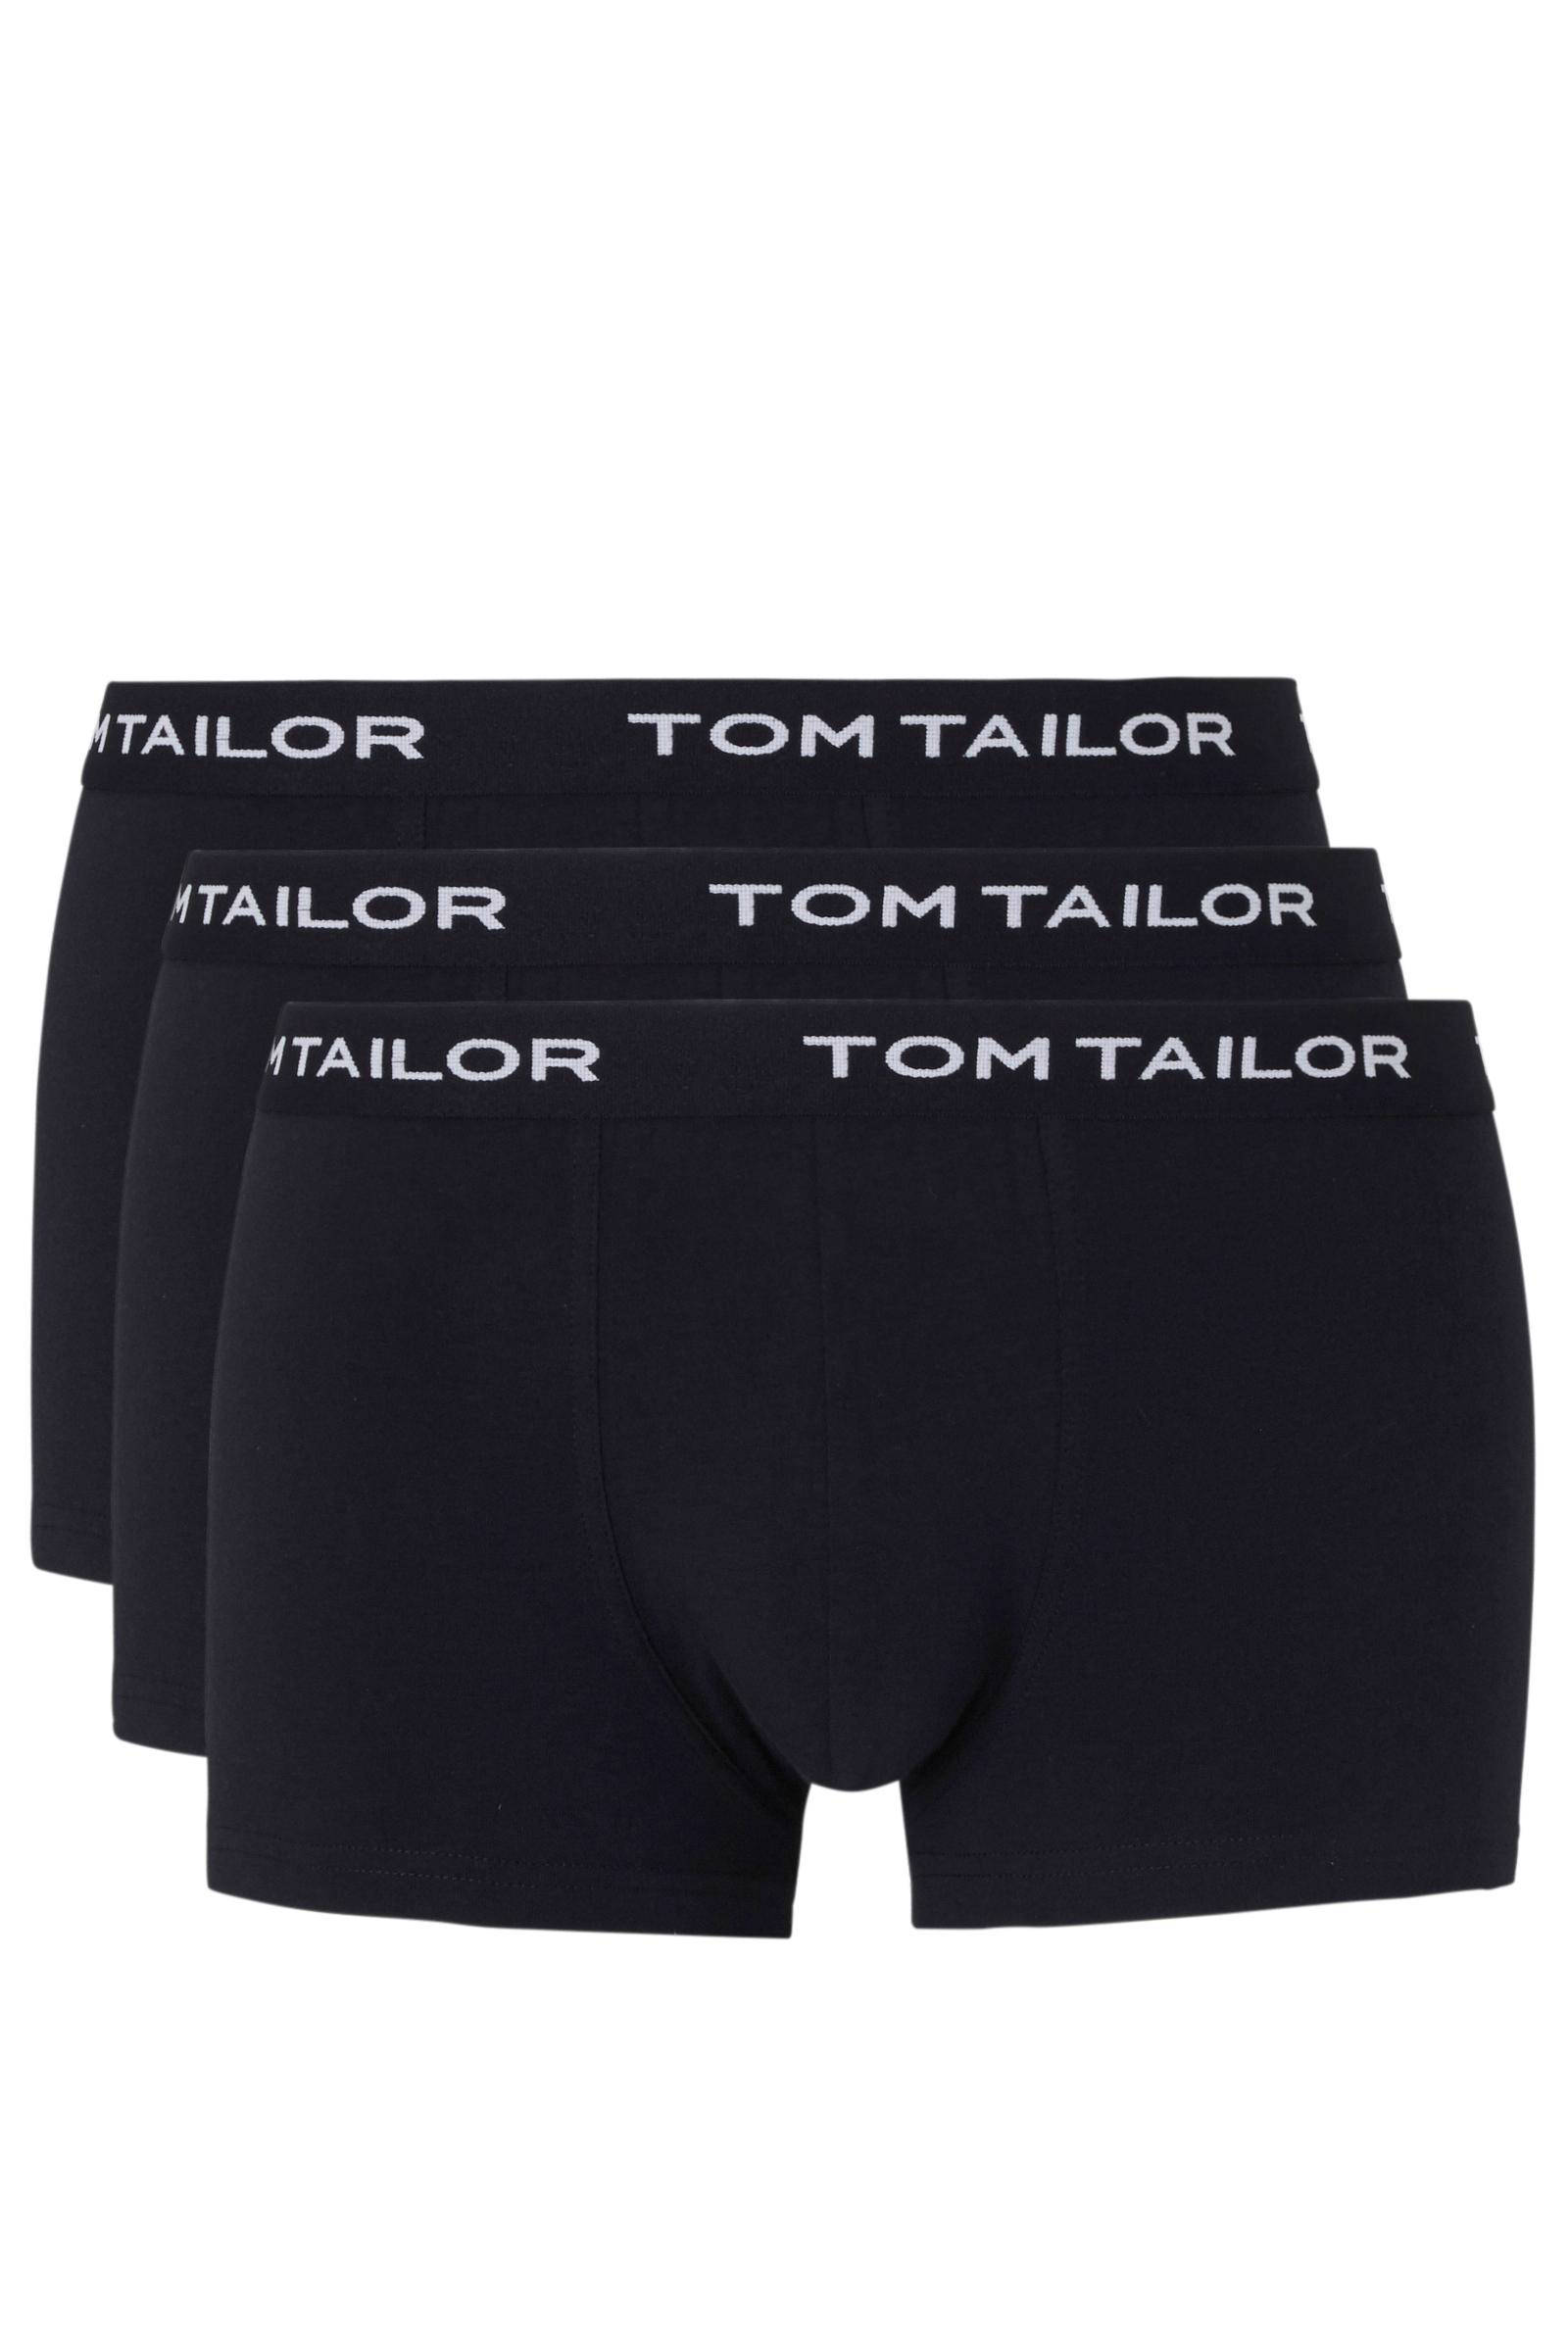 Tom Tailor boxershort (set van 3) online kopen